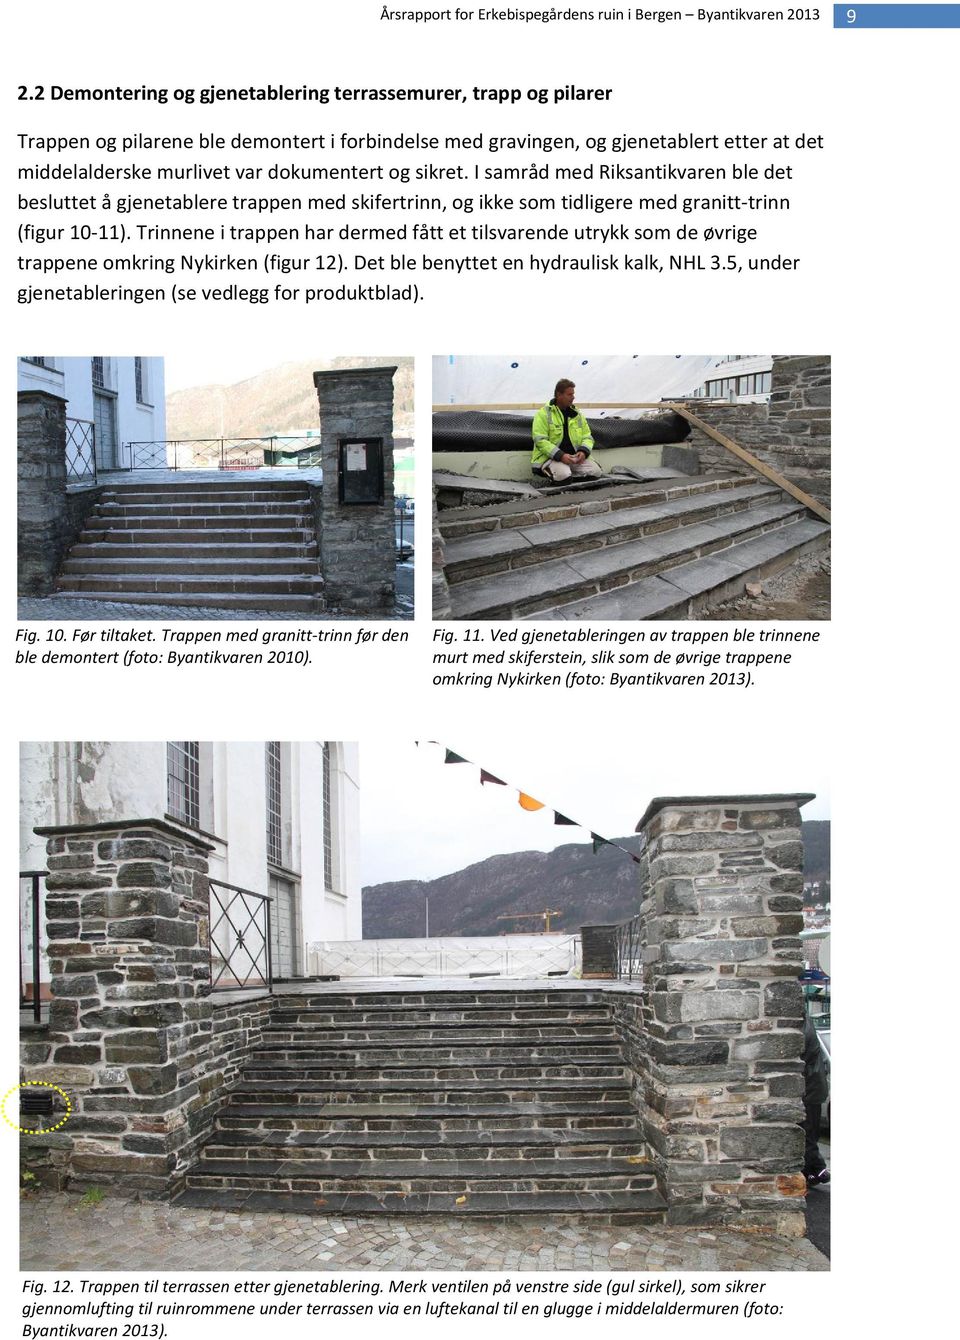 Trinnene i trappen har dermed fått et tilsvarende utrykk som de øvrige trappene omkring Nykirken (figur 12). Det ble benyttet en hydraulisk kalk, NHL 3.